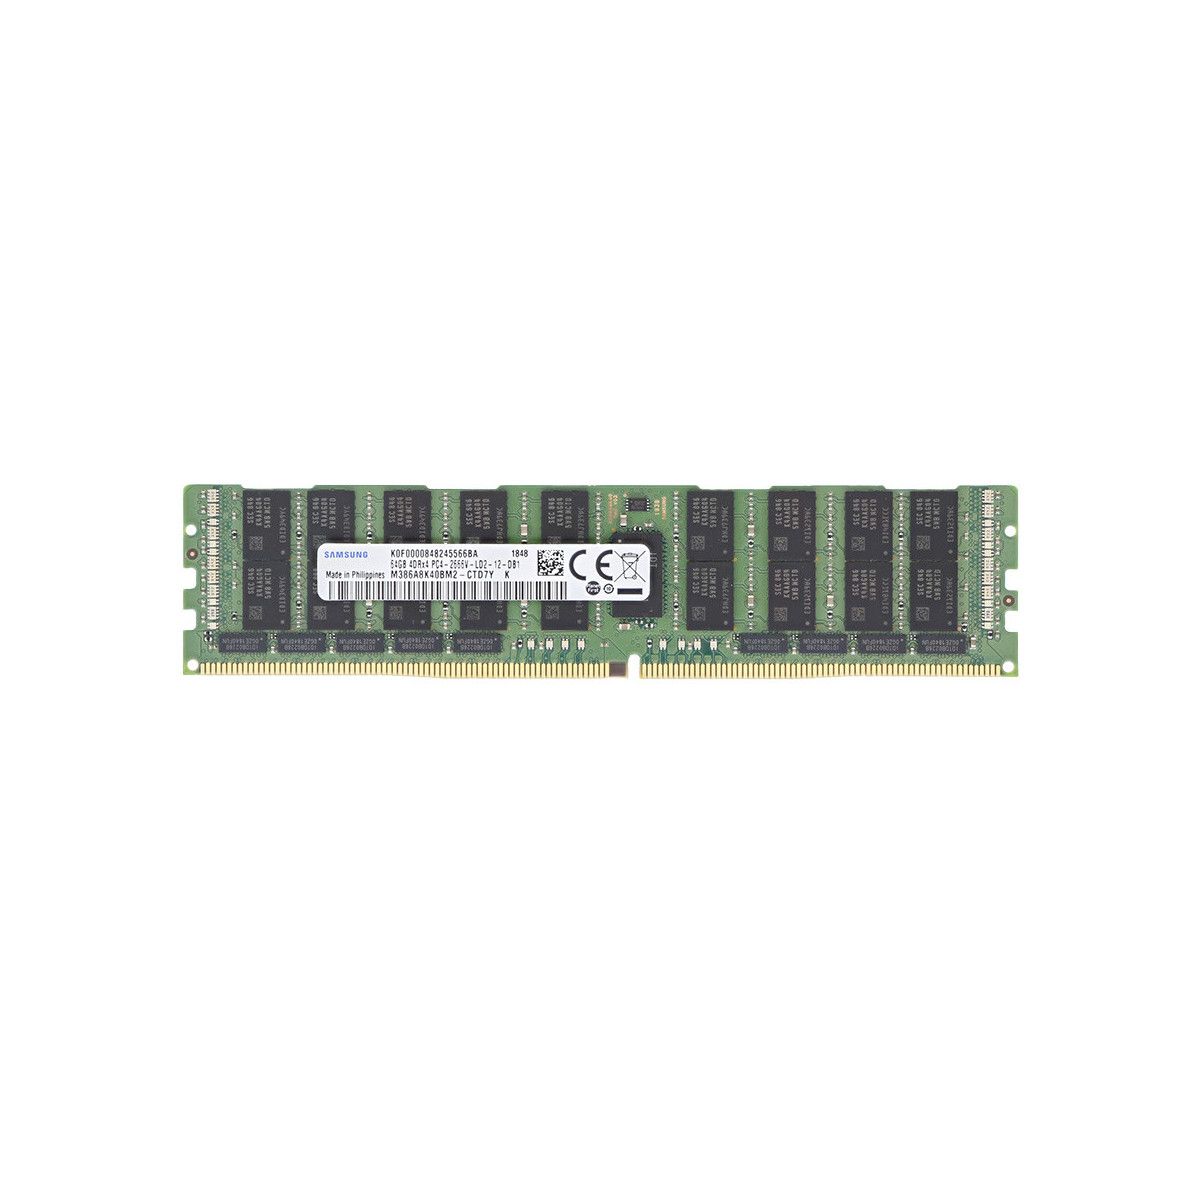 A8711890-MS - Memstar 1x 64GB DDR4-2400 LRDIMM PC4-19200T-L - Mem-Star Kompatibel OEM Speichermedien 1 - Memstar 